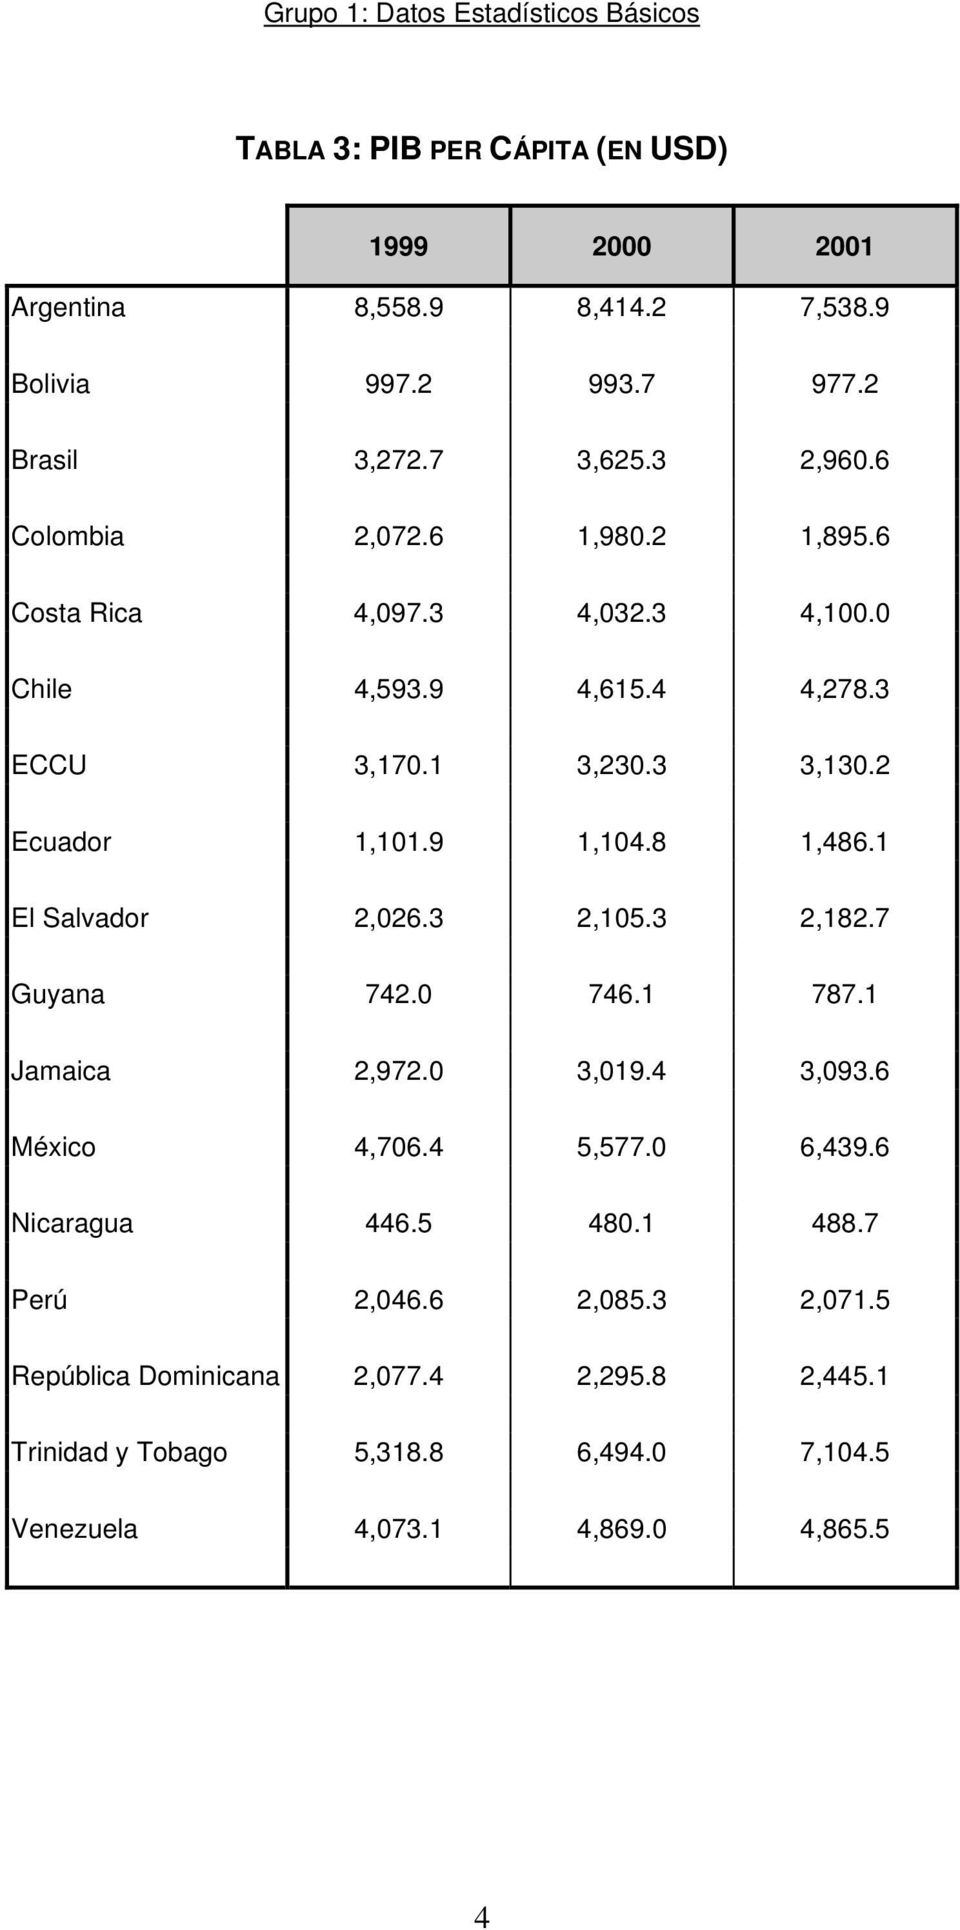 9 1,104.8 1,486.1 El Salvador 2,026.3 2,105.3 2,182.7 Guyana 742.0 746.1 787.1 Jamaica 2,972.0 3,019.4 3,093.6 México 4,706.4 5,577.0 6,439.6 Nicaragua 446.